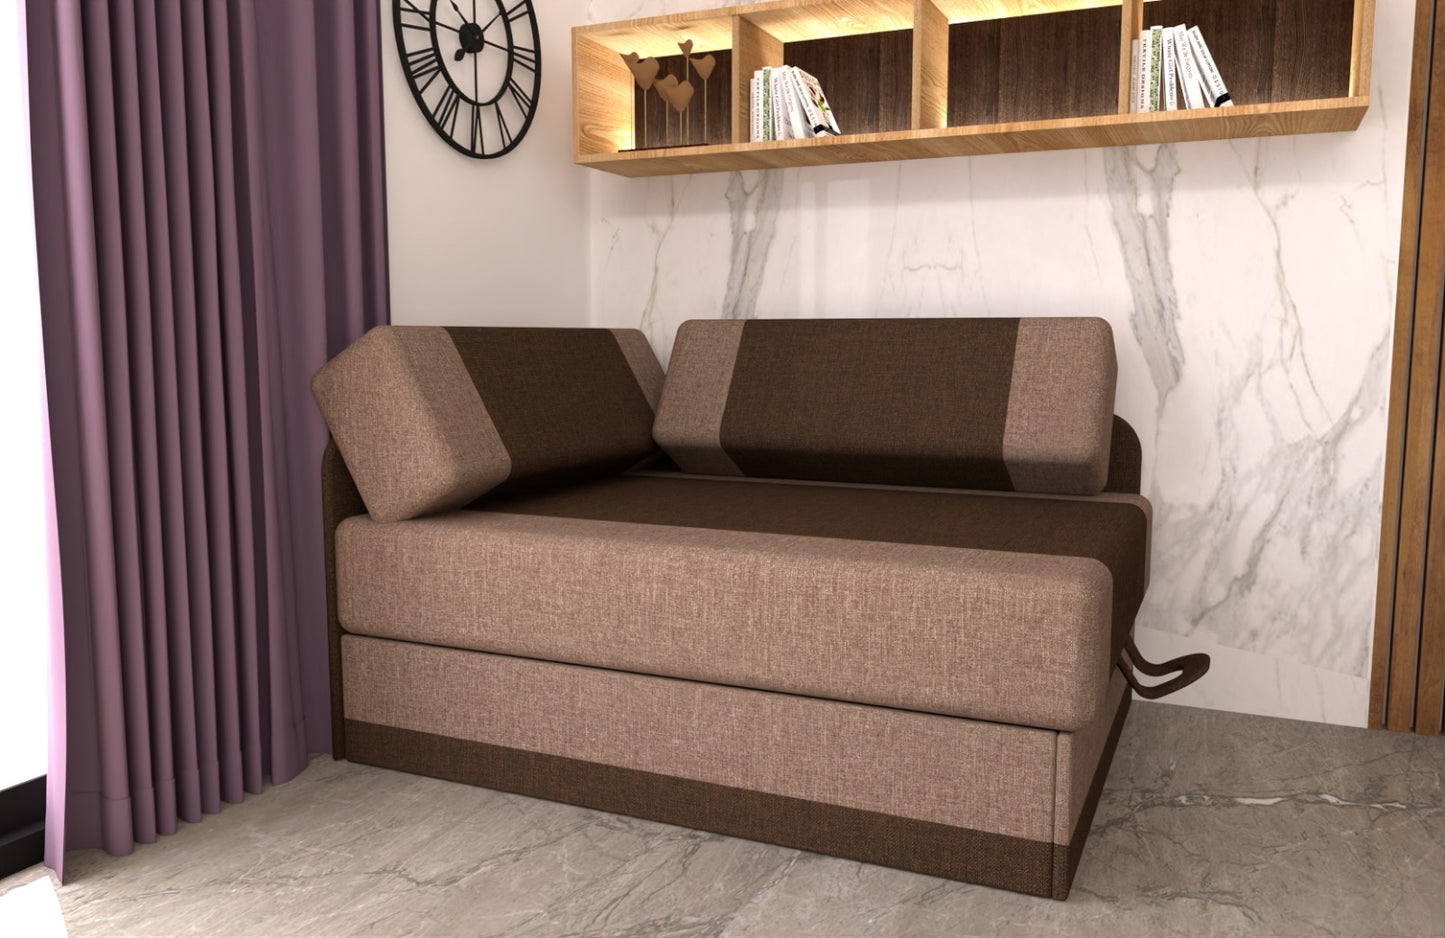 Brązowy fotel tapczan sofa rozkładana regulowana długość MIKI w przykładowej aranżacji w niewielkim powieszczeniu.